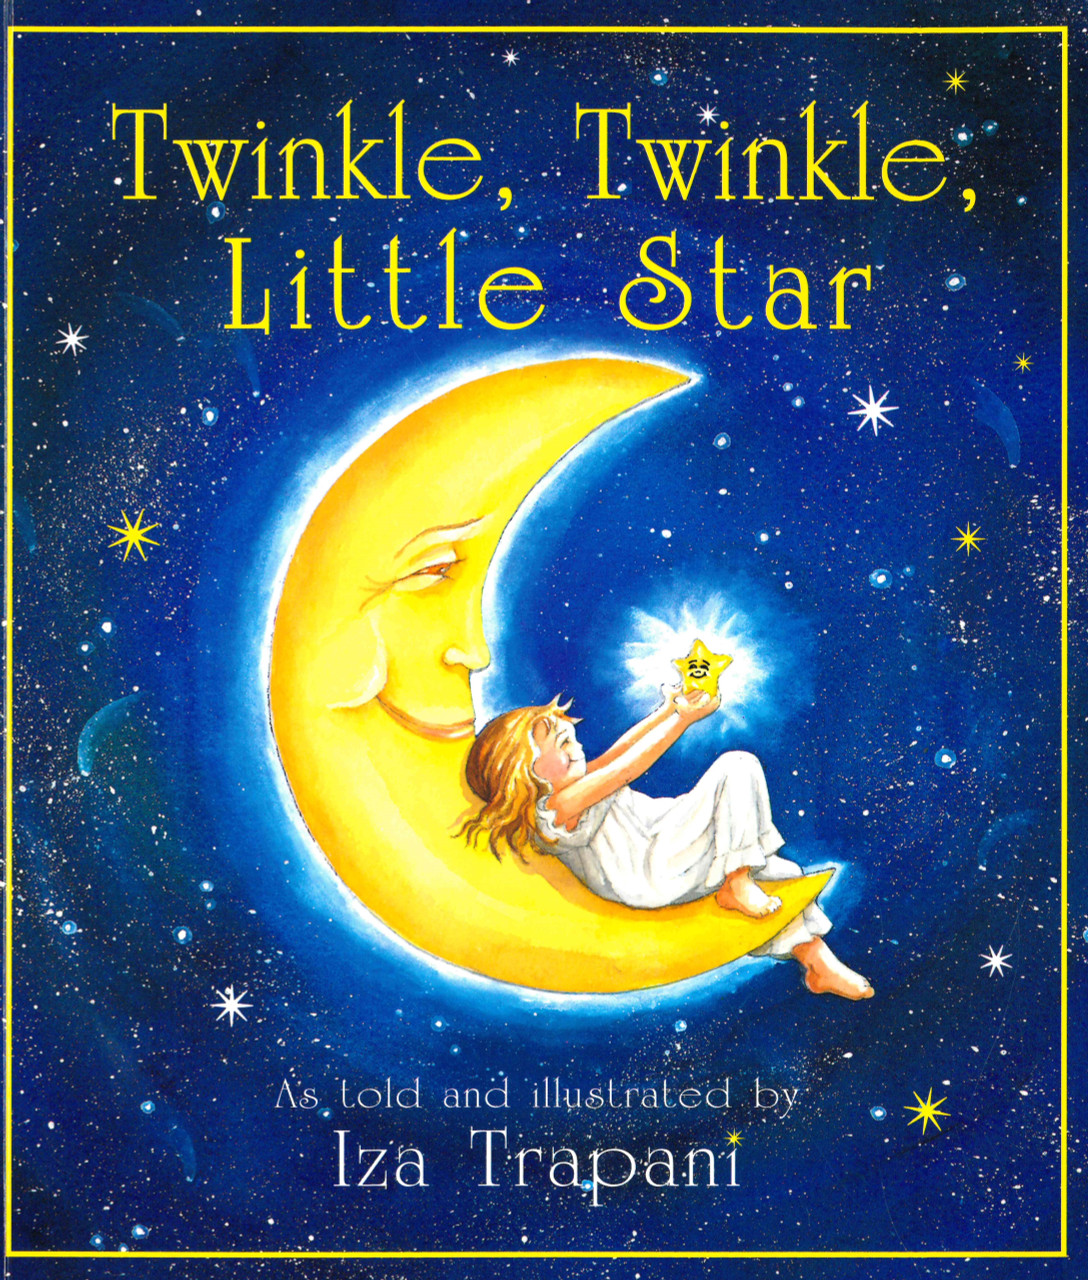 Twinkle Twinkle Little Star-Lyrics-Twinkle-Twinkle Little Star-KKBOX